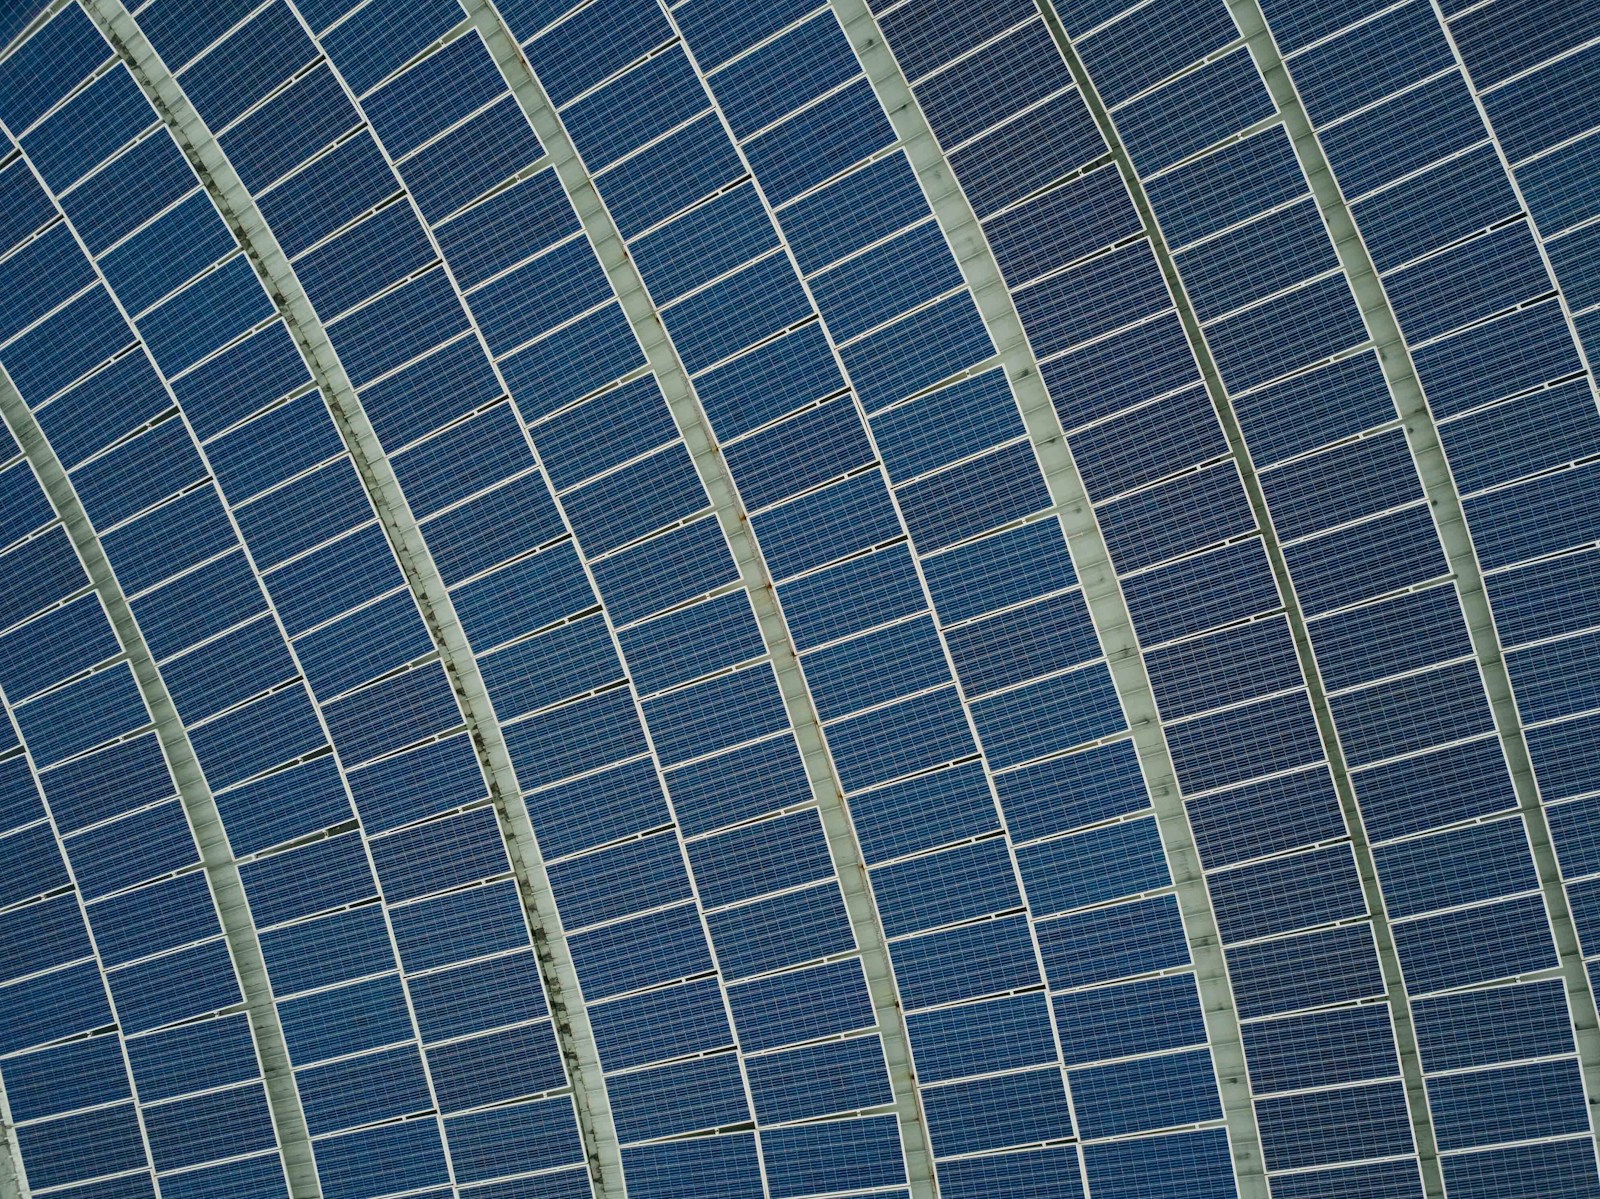 comment monter un projet photovoltaïque rentable et efficace ?